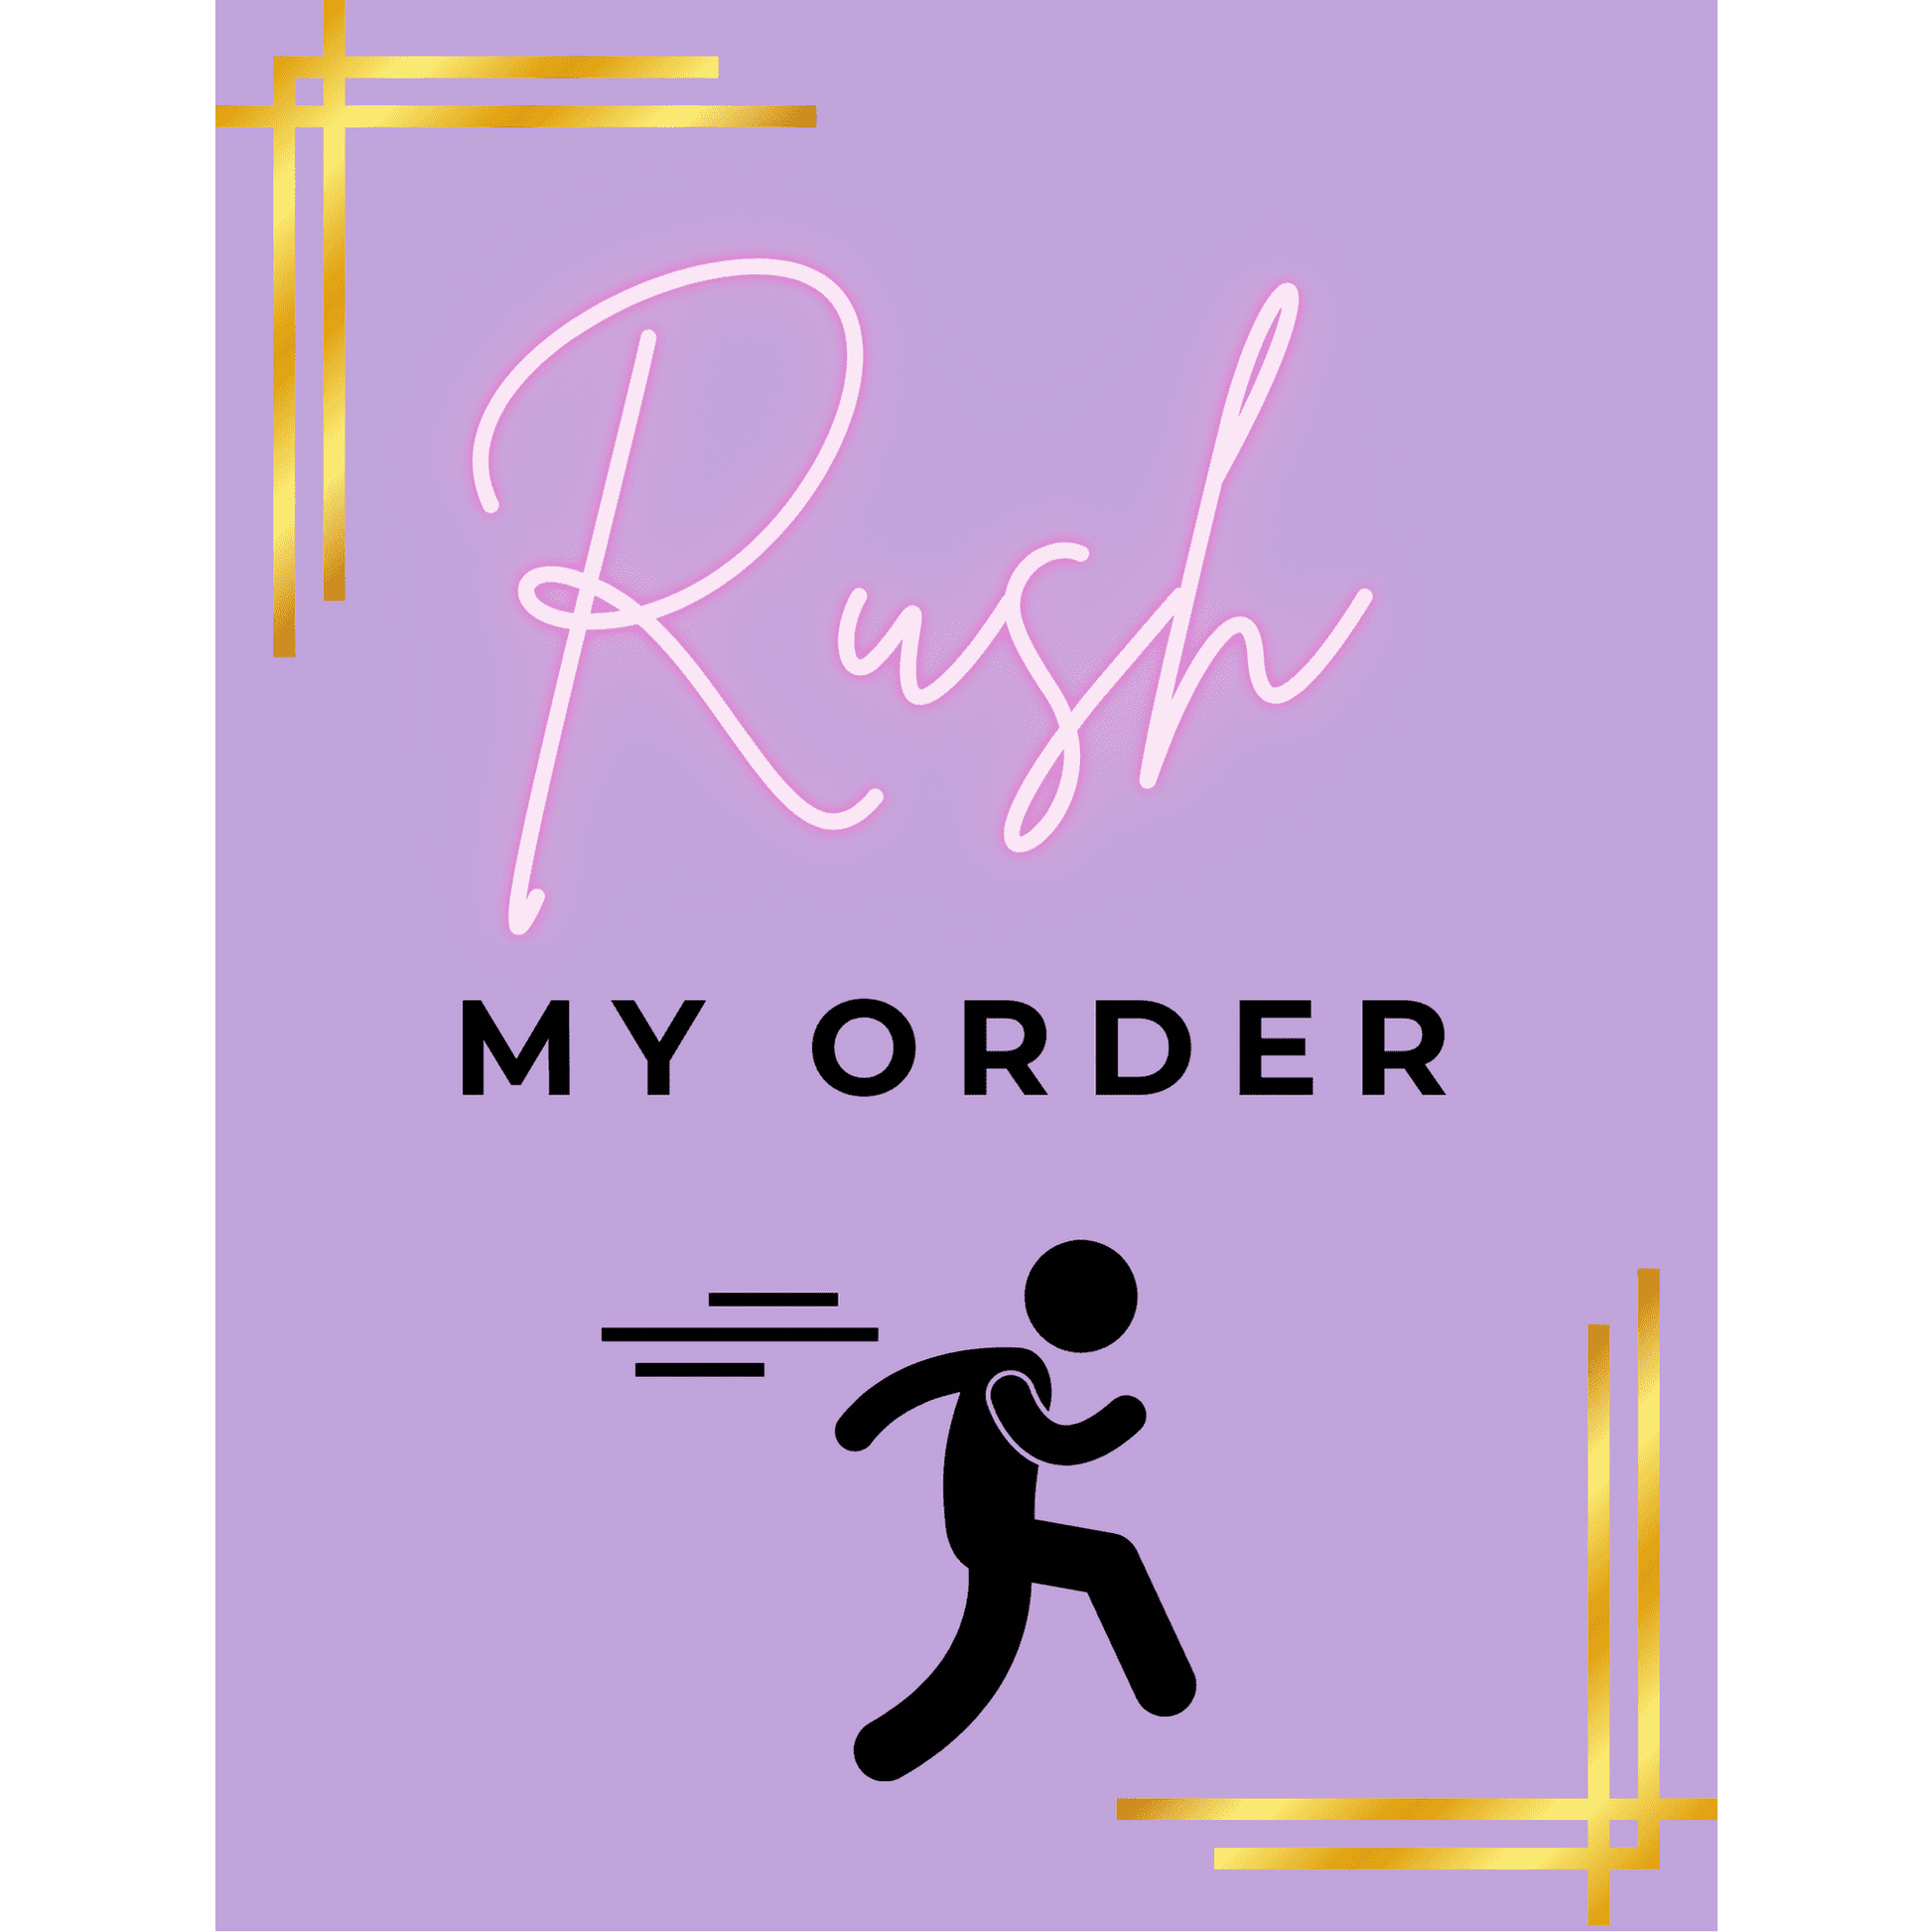 Rush My Order